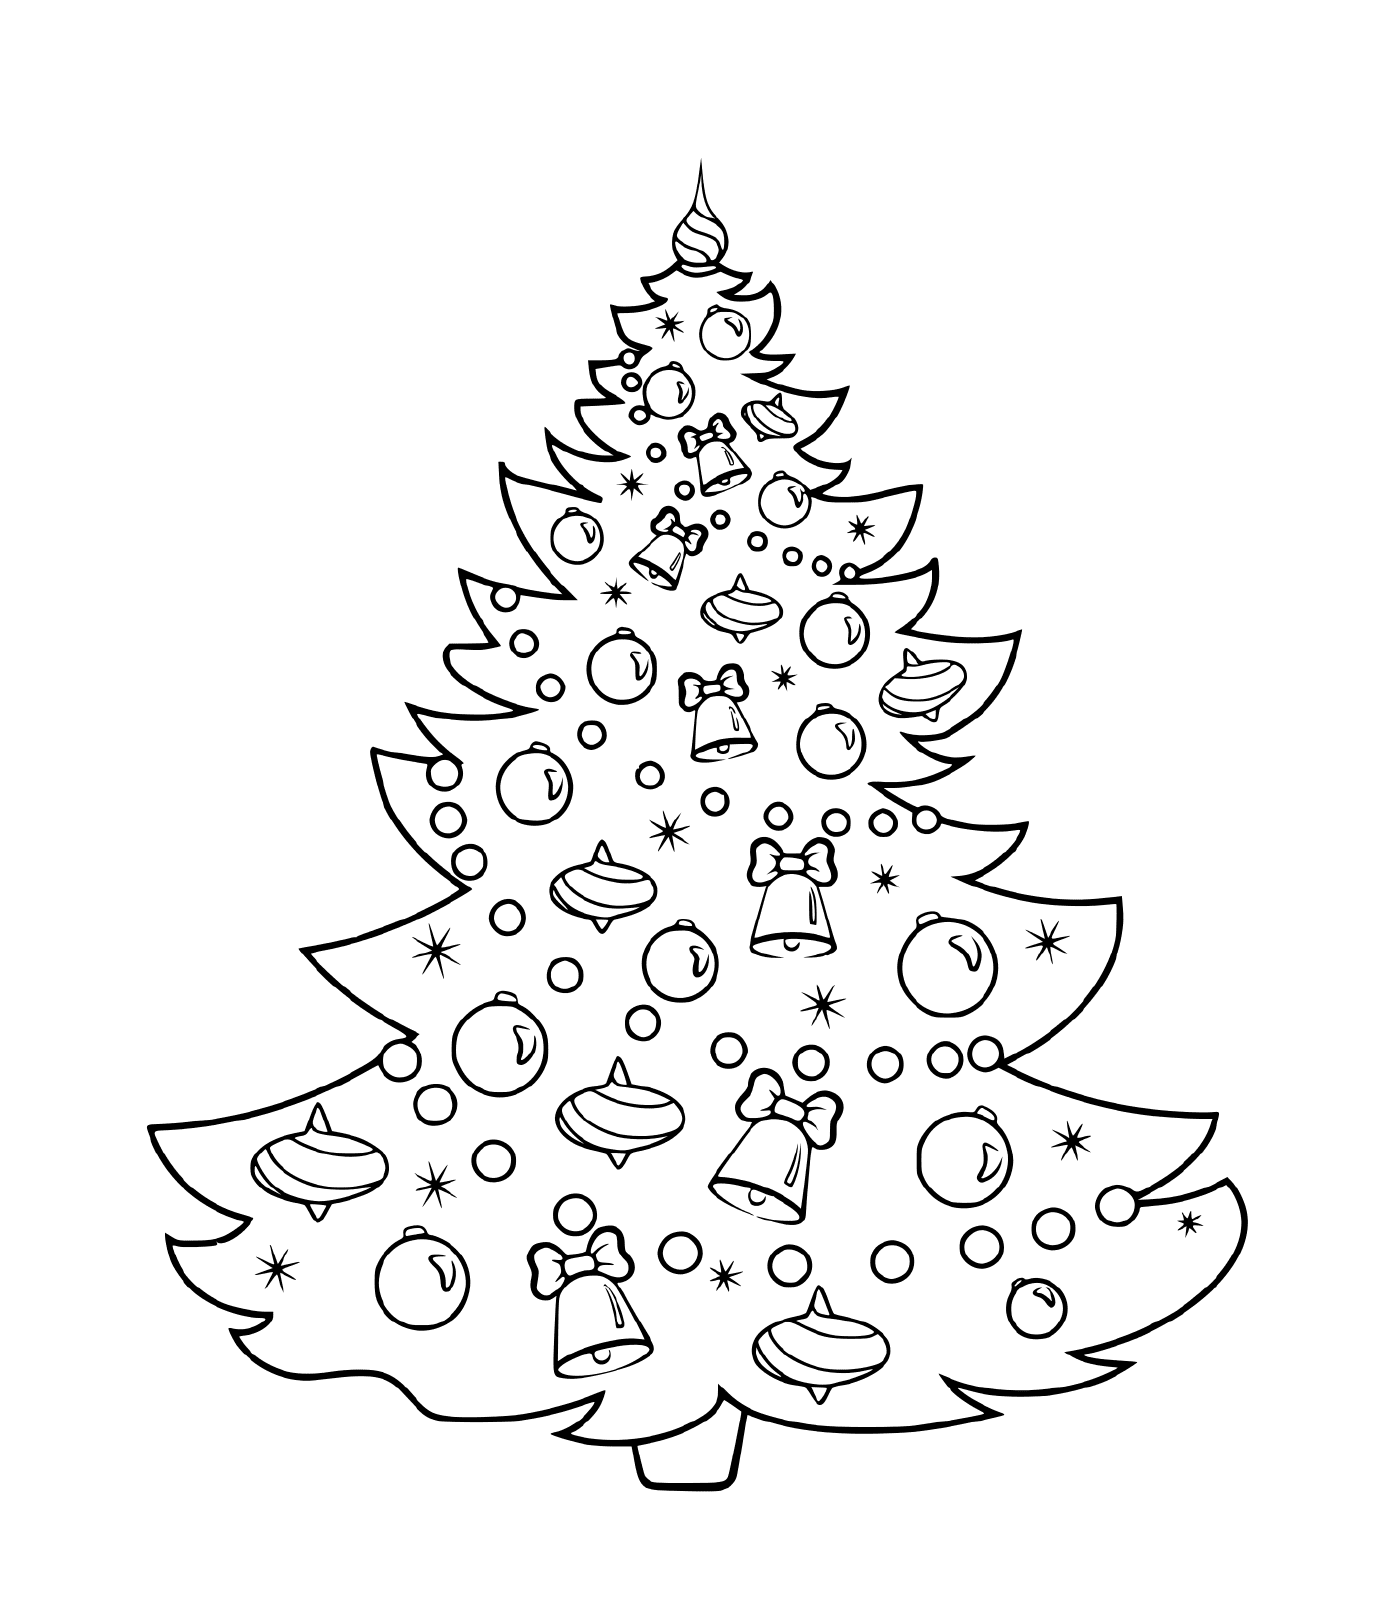  شجرة عيد الميلاد مع الكرات والأجراس والأجراس والأغلال 